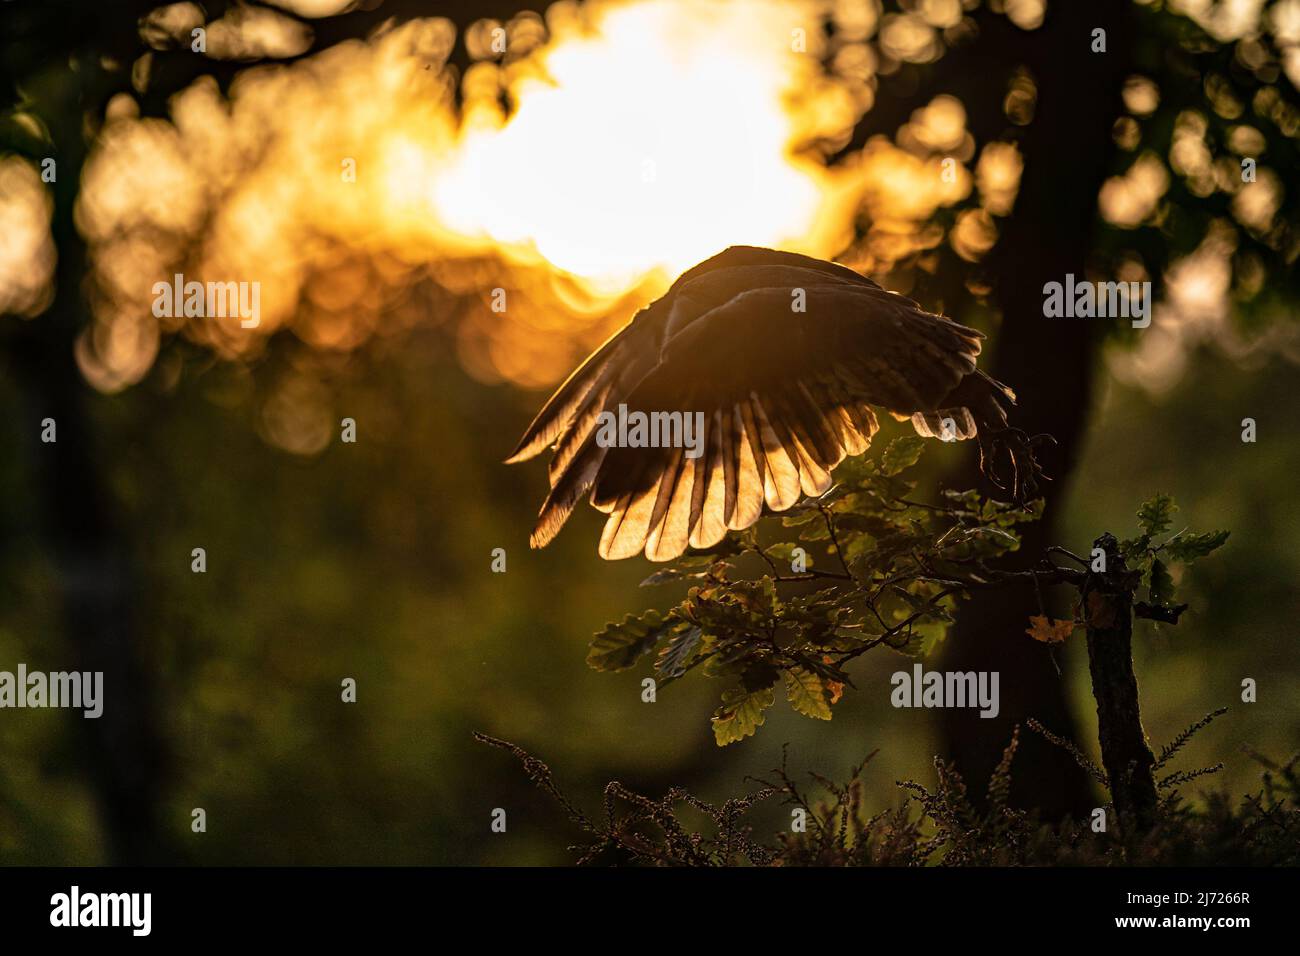 Silhouette rétro-éclairée d'un hibou volant au coucher du soleil. Hibou de la grange avec ailes étalées. Action photo avec des couleurs et des lumières de soirée agréables. Tyto alba. Banque D'Images